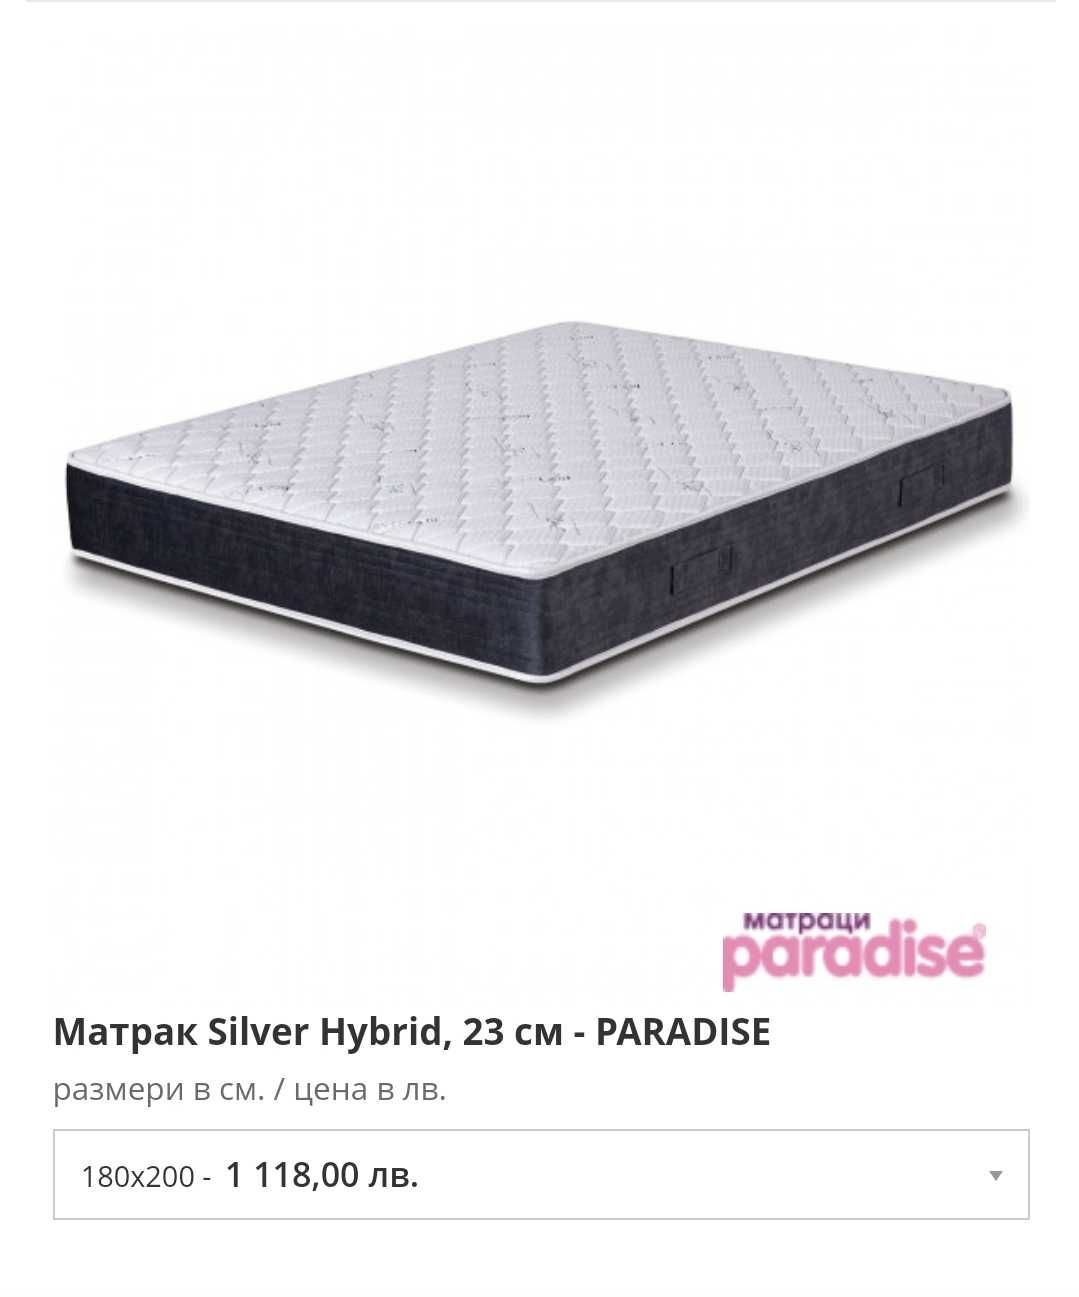 Матрак Paradise Silver Hybrid двулицев 180×200×23